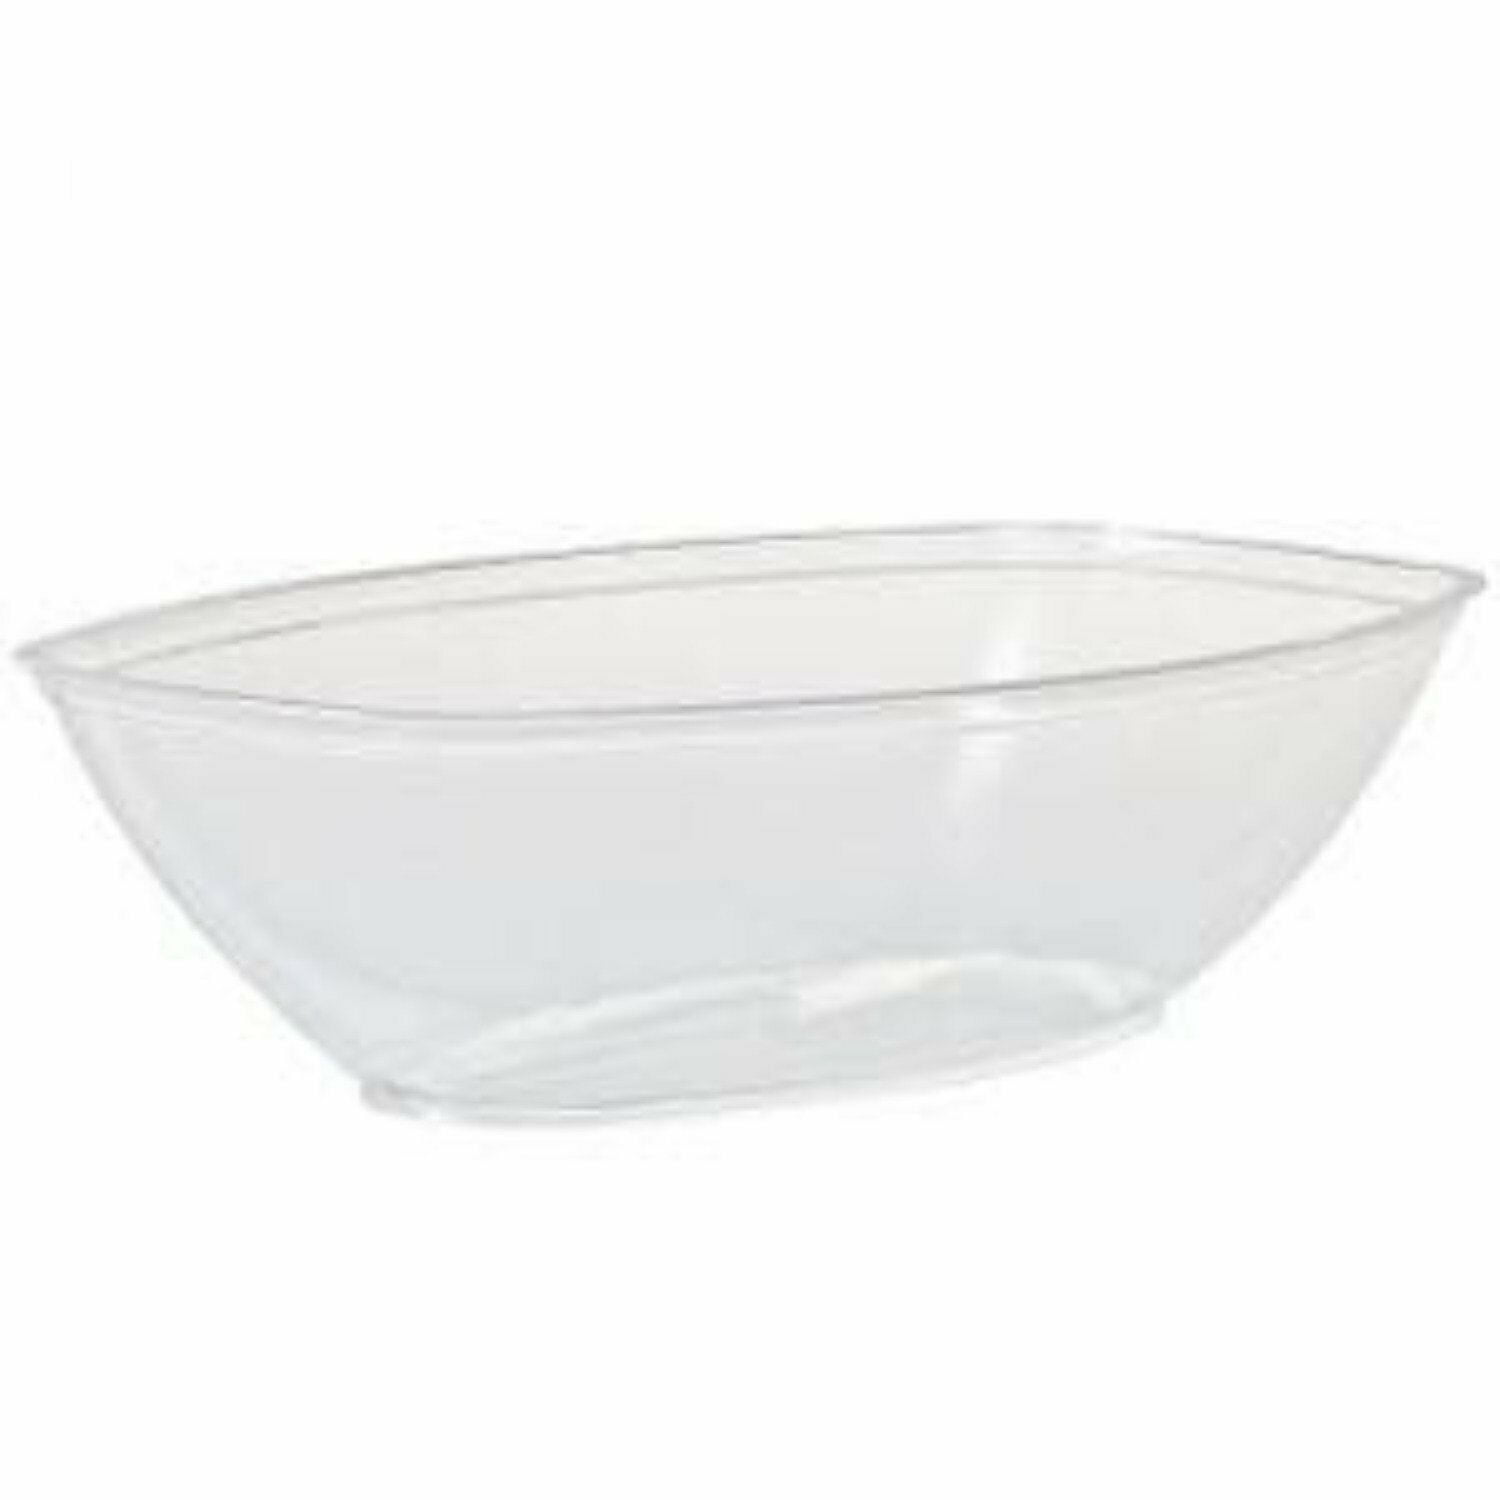 50 X White Plastic 12oz Disposable Bowls 